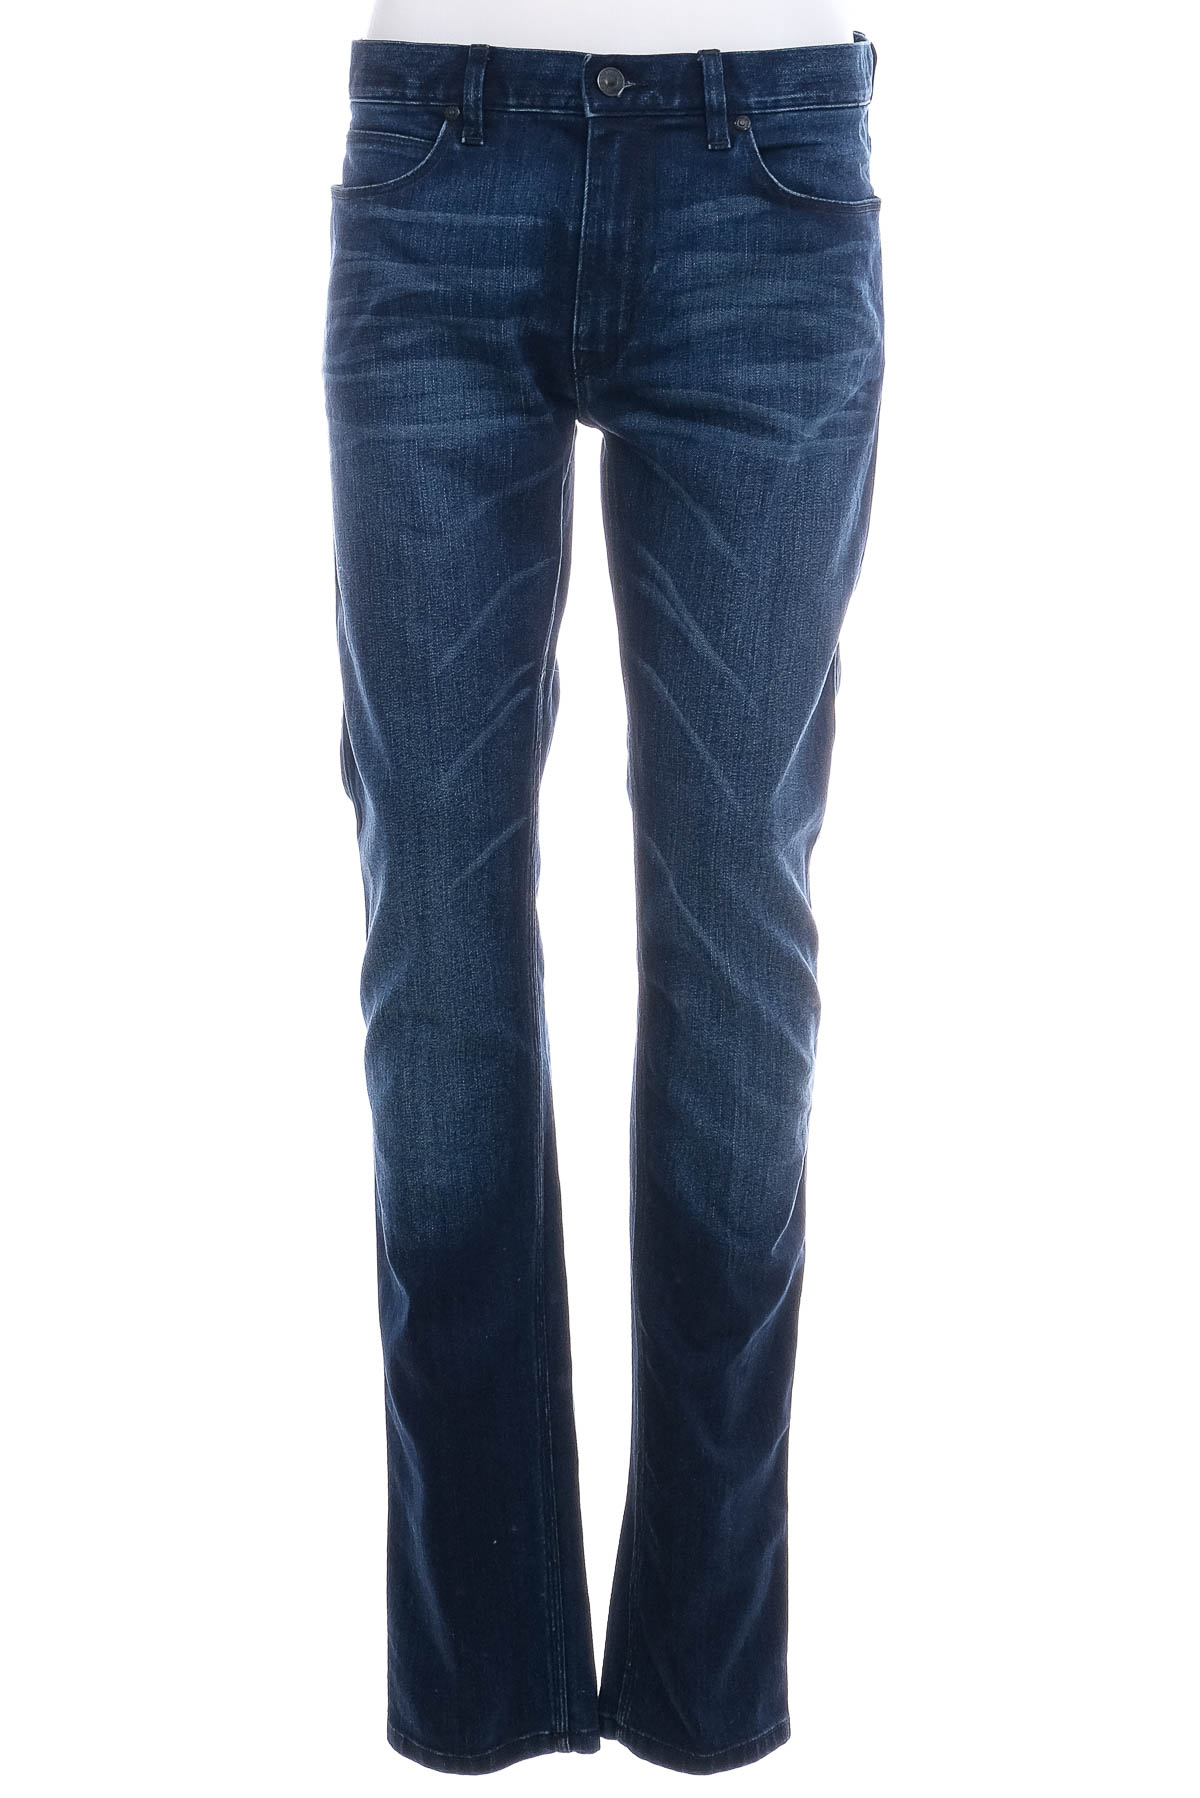 Men's jeans - HUGO BOSS - 0